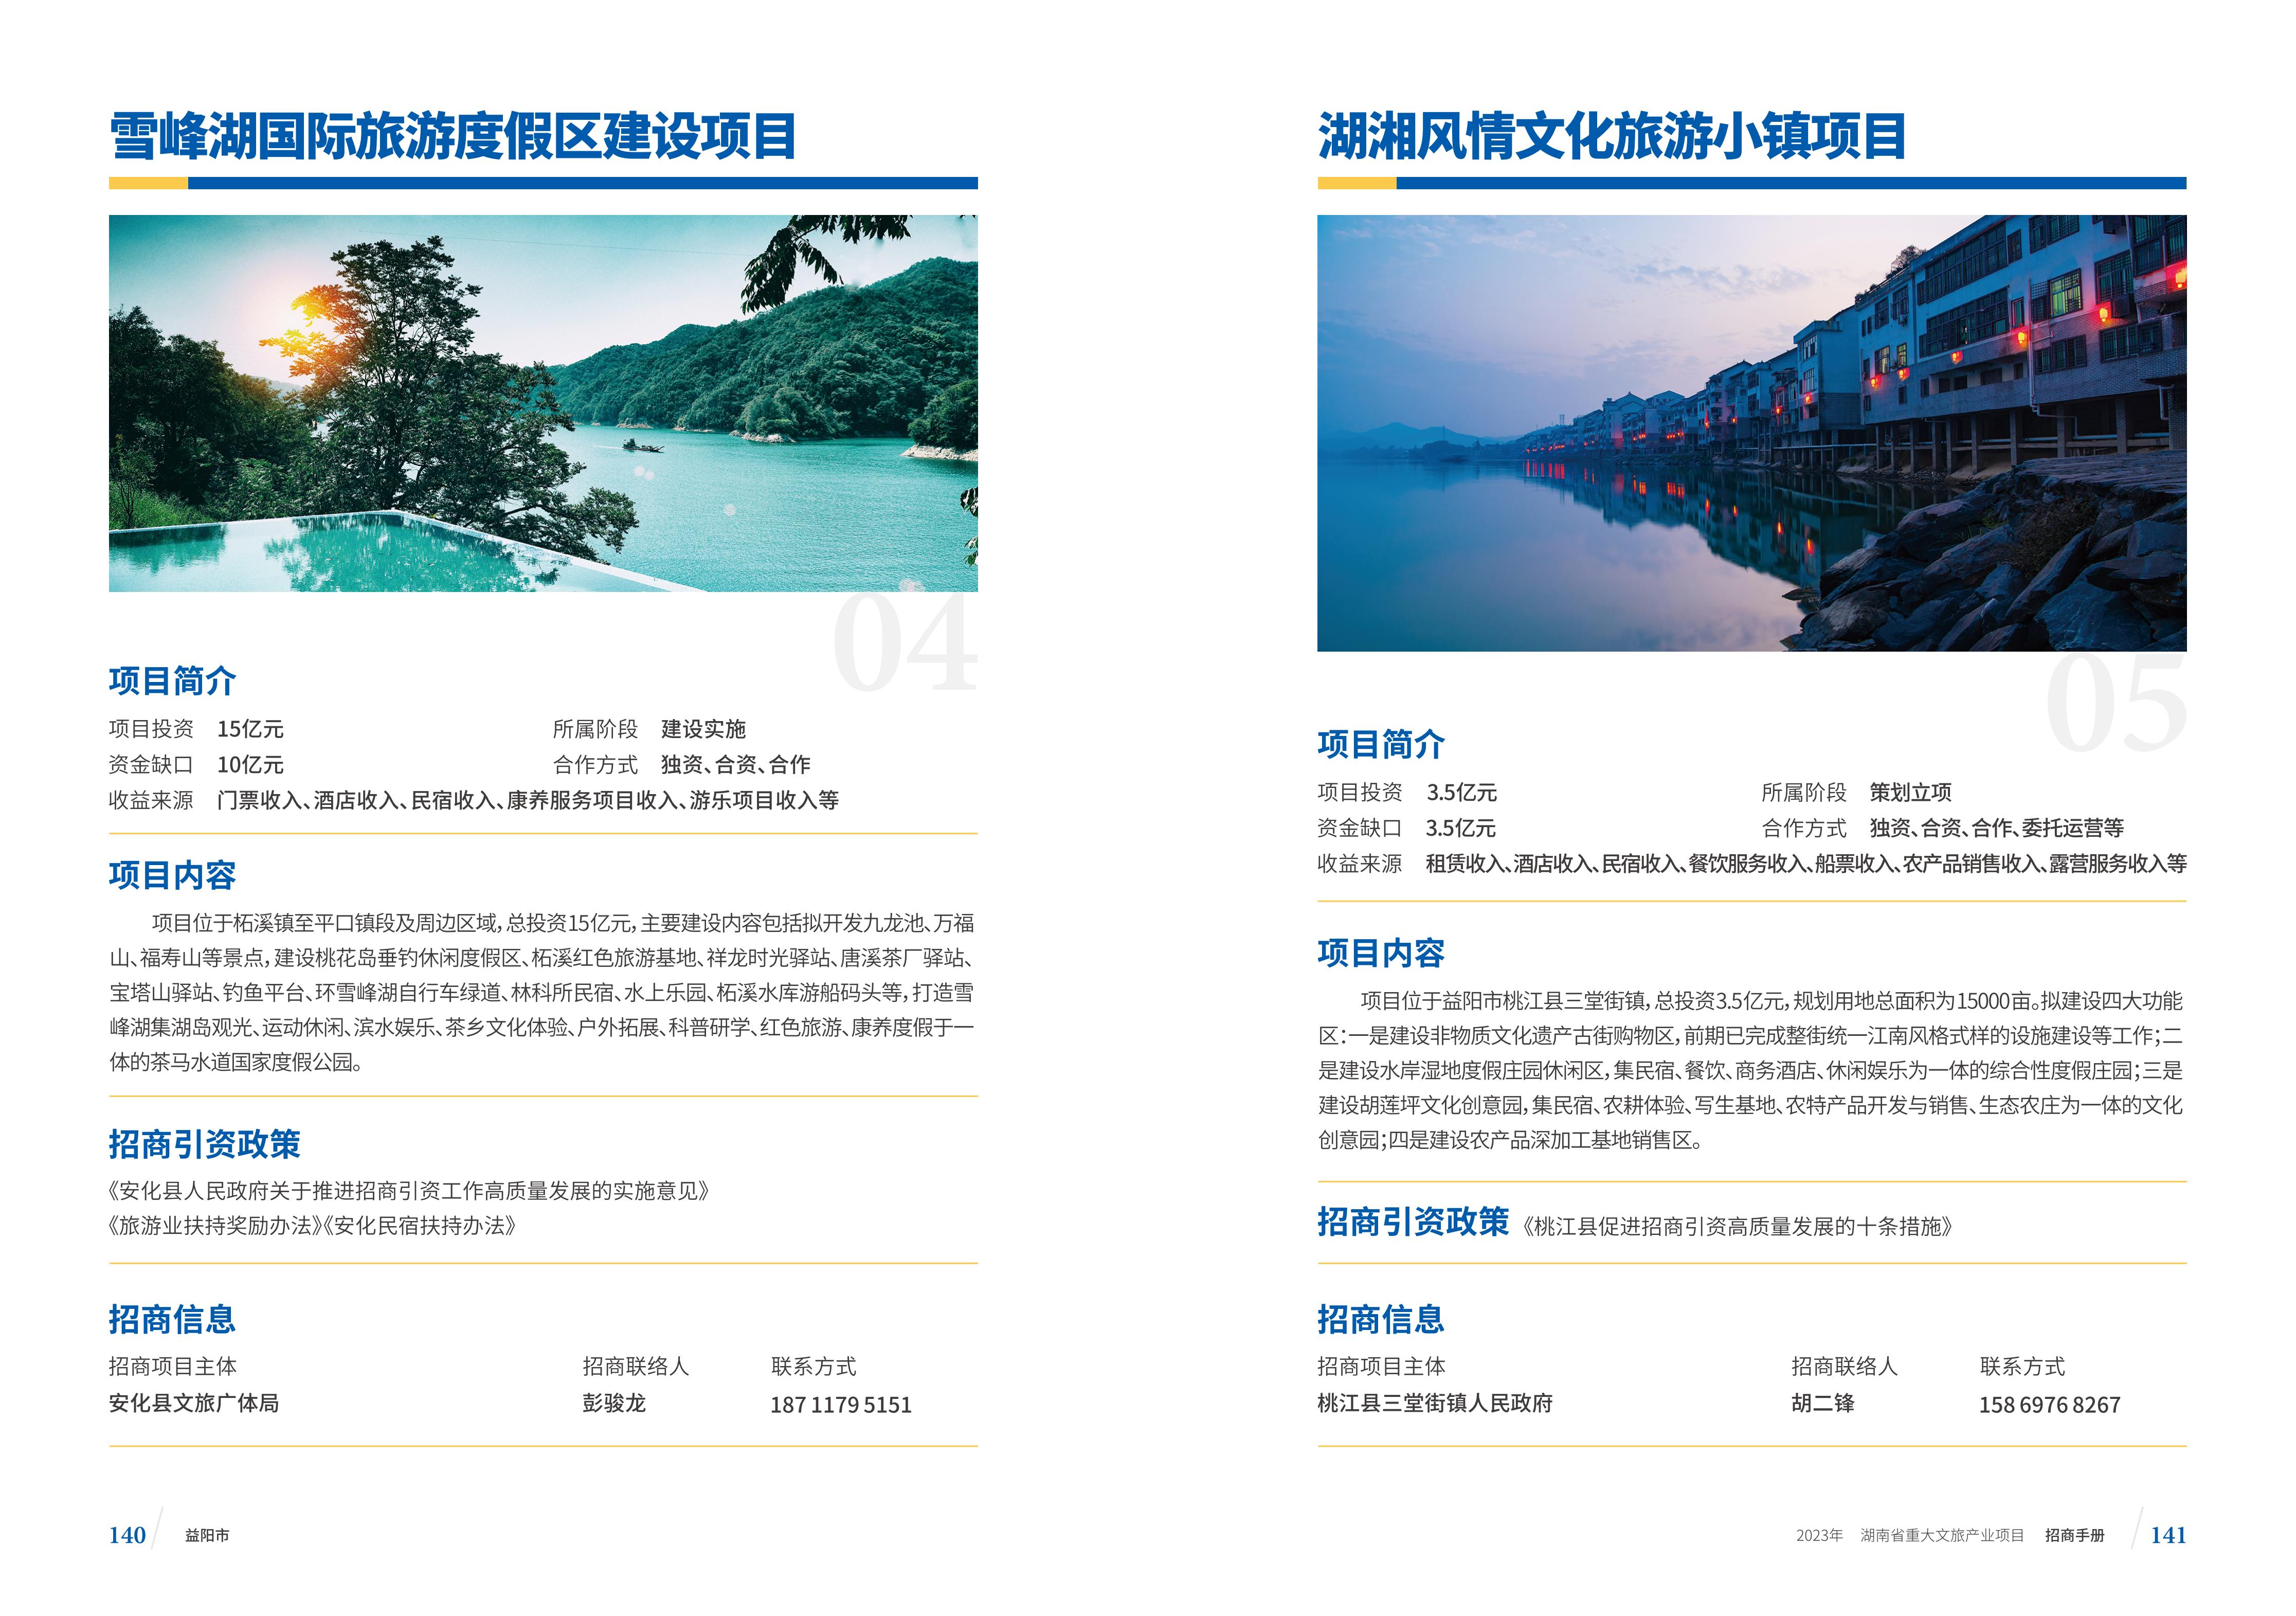 湖南省重大文旅产业项目招手册线上链接版_78.jpg